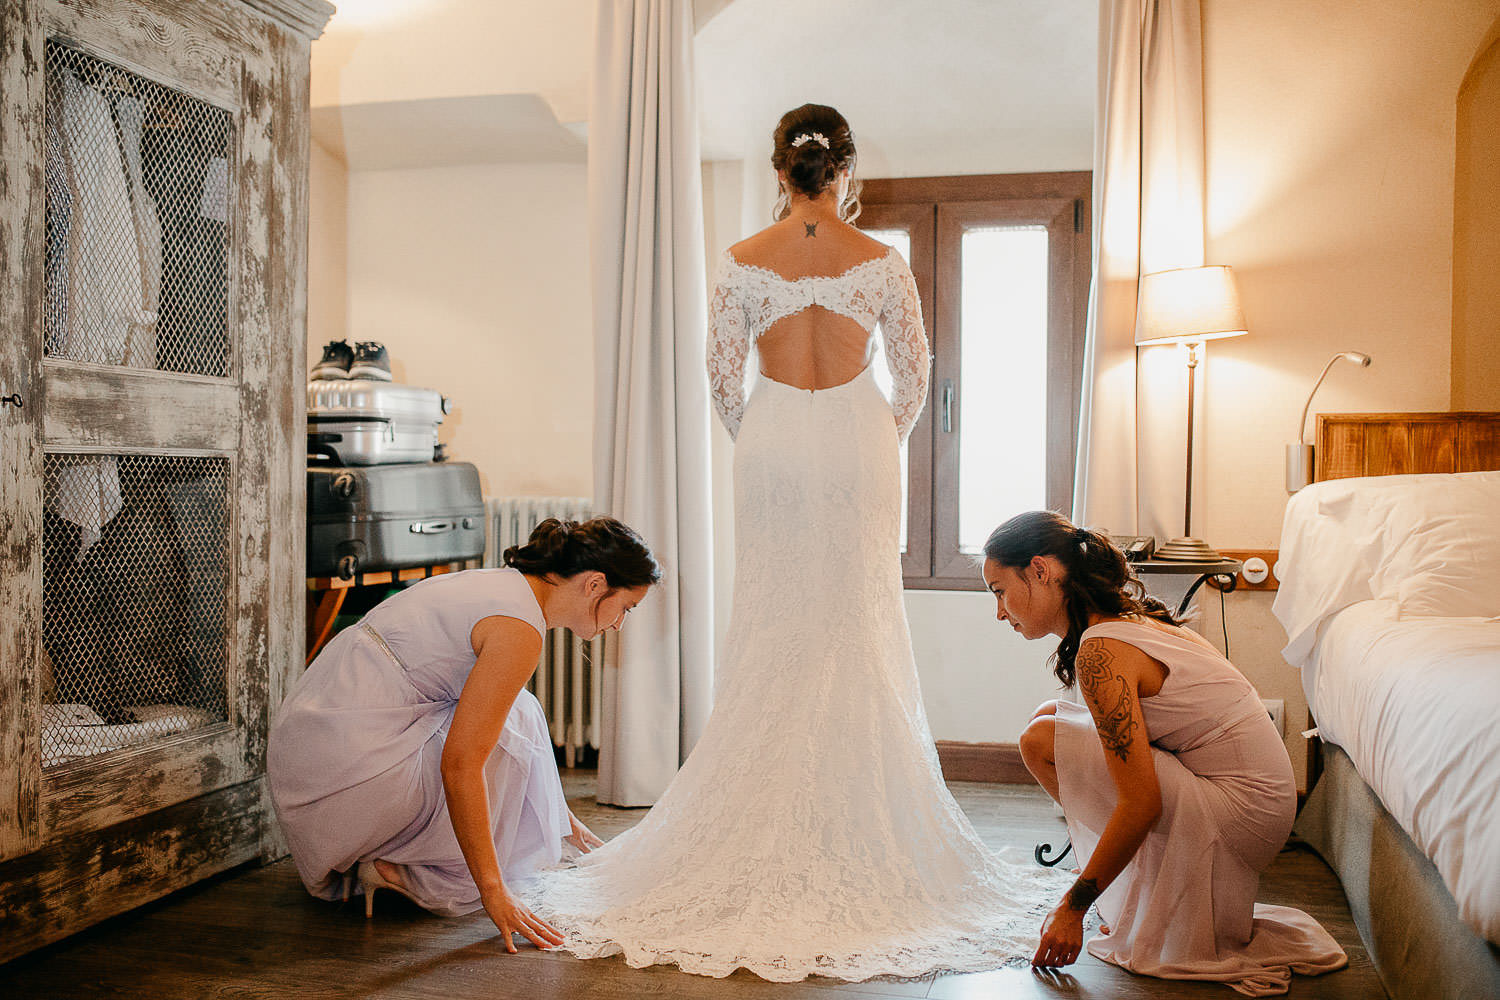 Hermana ayuda a la novia a vestirse, colocando la cola del vestido